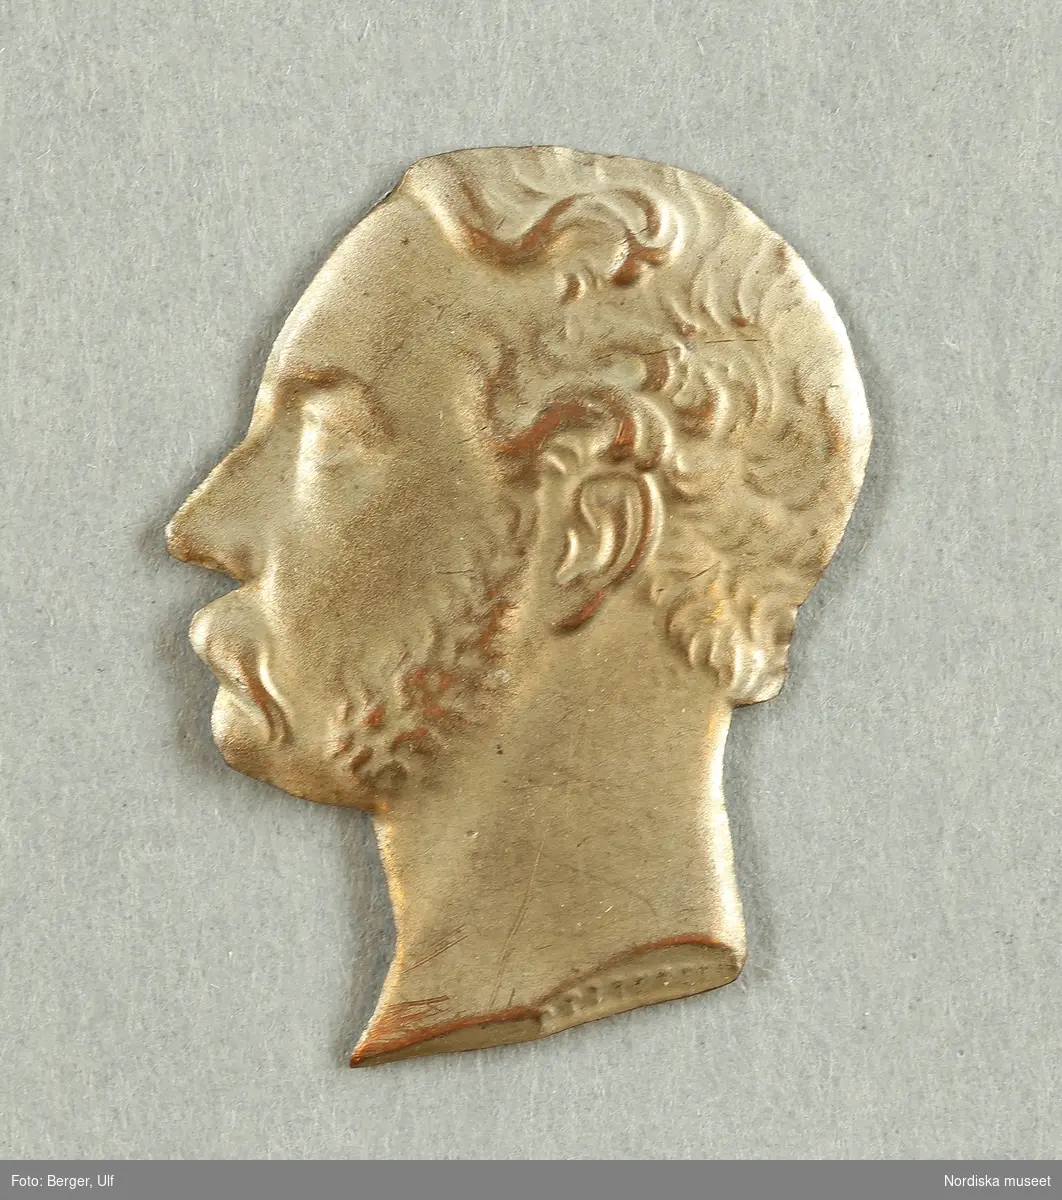 Kung av Danmark, regent 1863-1906